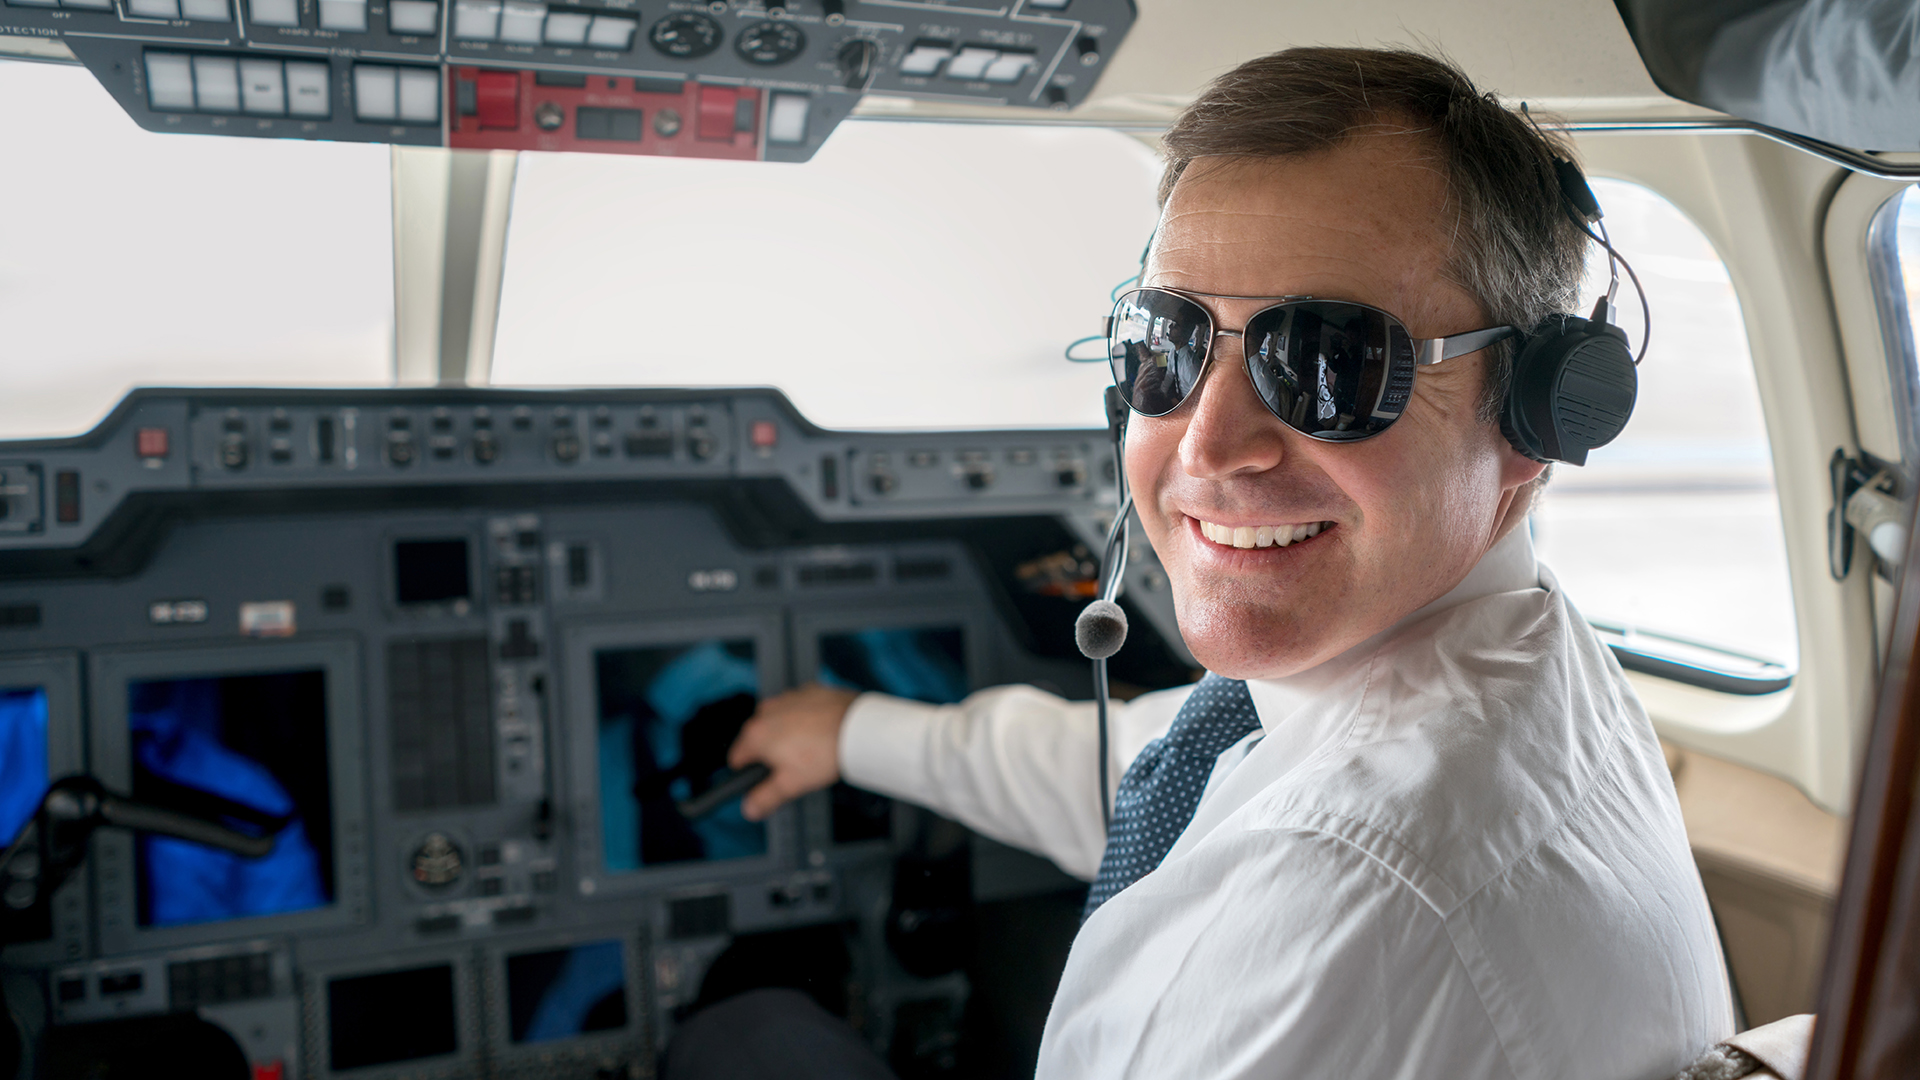 Comentarios deportivos y canción de cuna: la humorada de un piloto de avión al dar la bienvenida a sus pasajeros